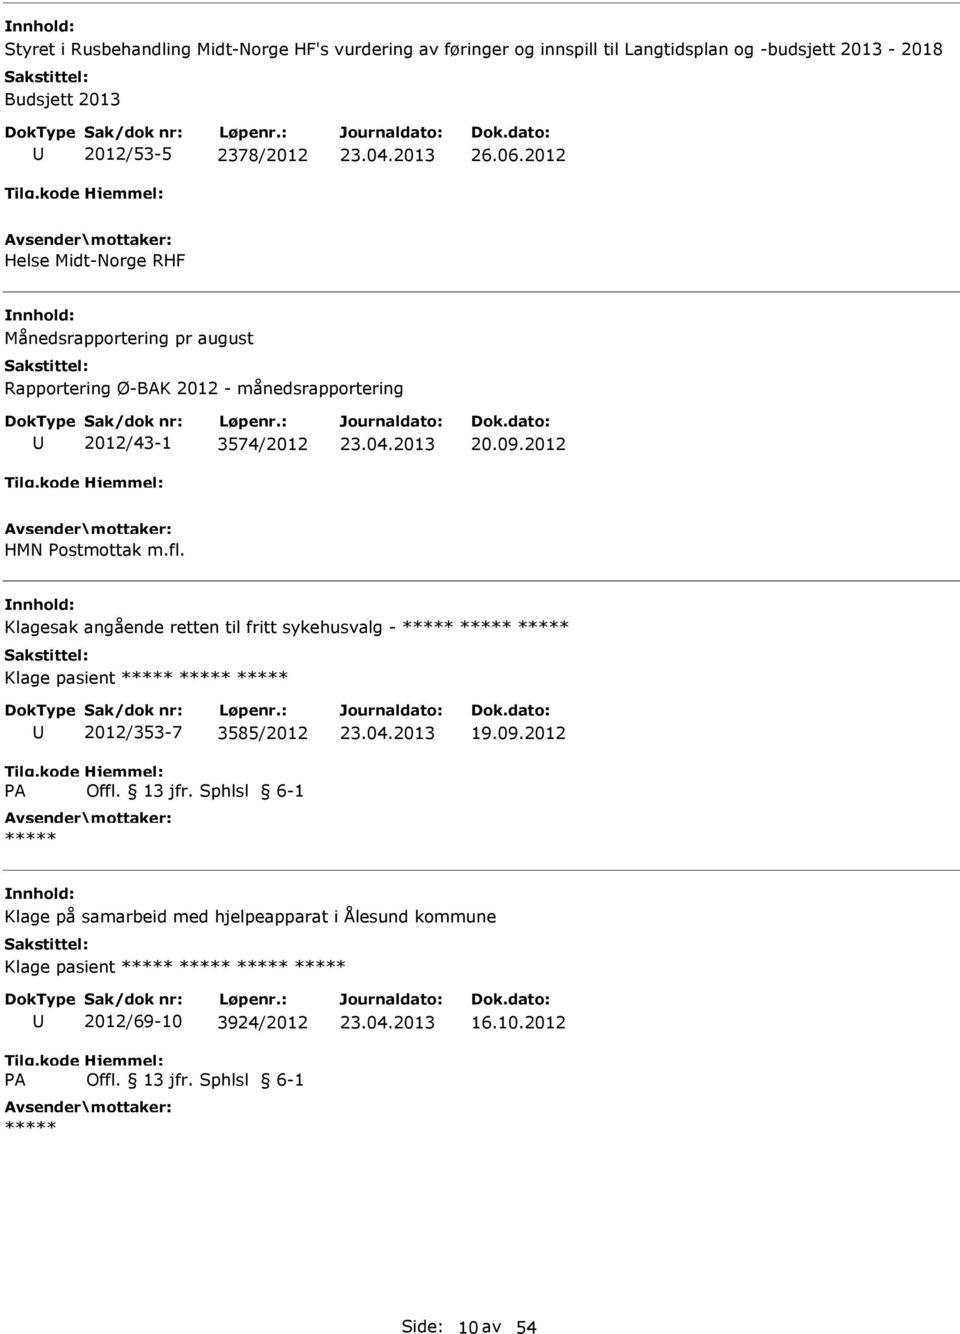 2012 HMN ostmottak m.fl. Klagesak angående retten til fritt sykehusvalg - Klage pasient A 2012/353-7 3585/2012 Offl. 13 jfr. Sphlsl 6-1 19.09.